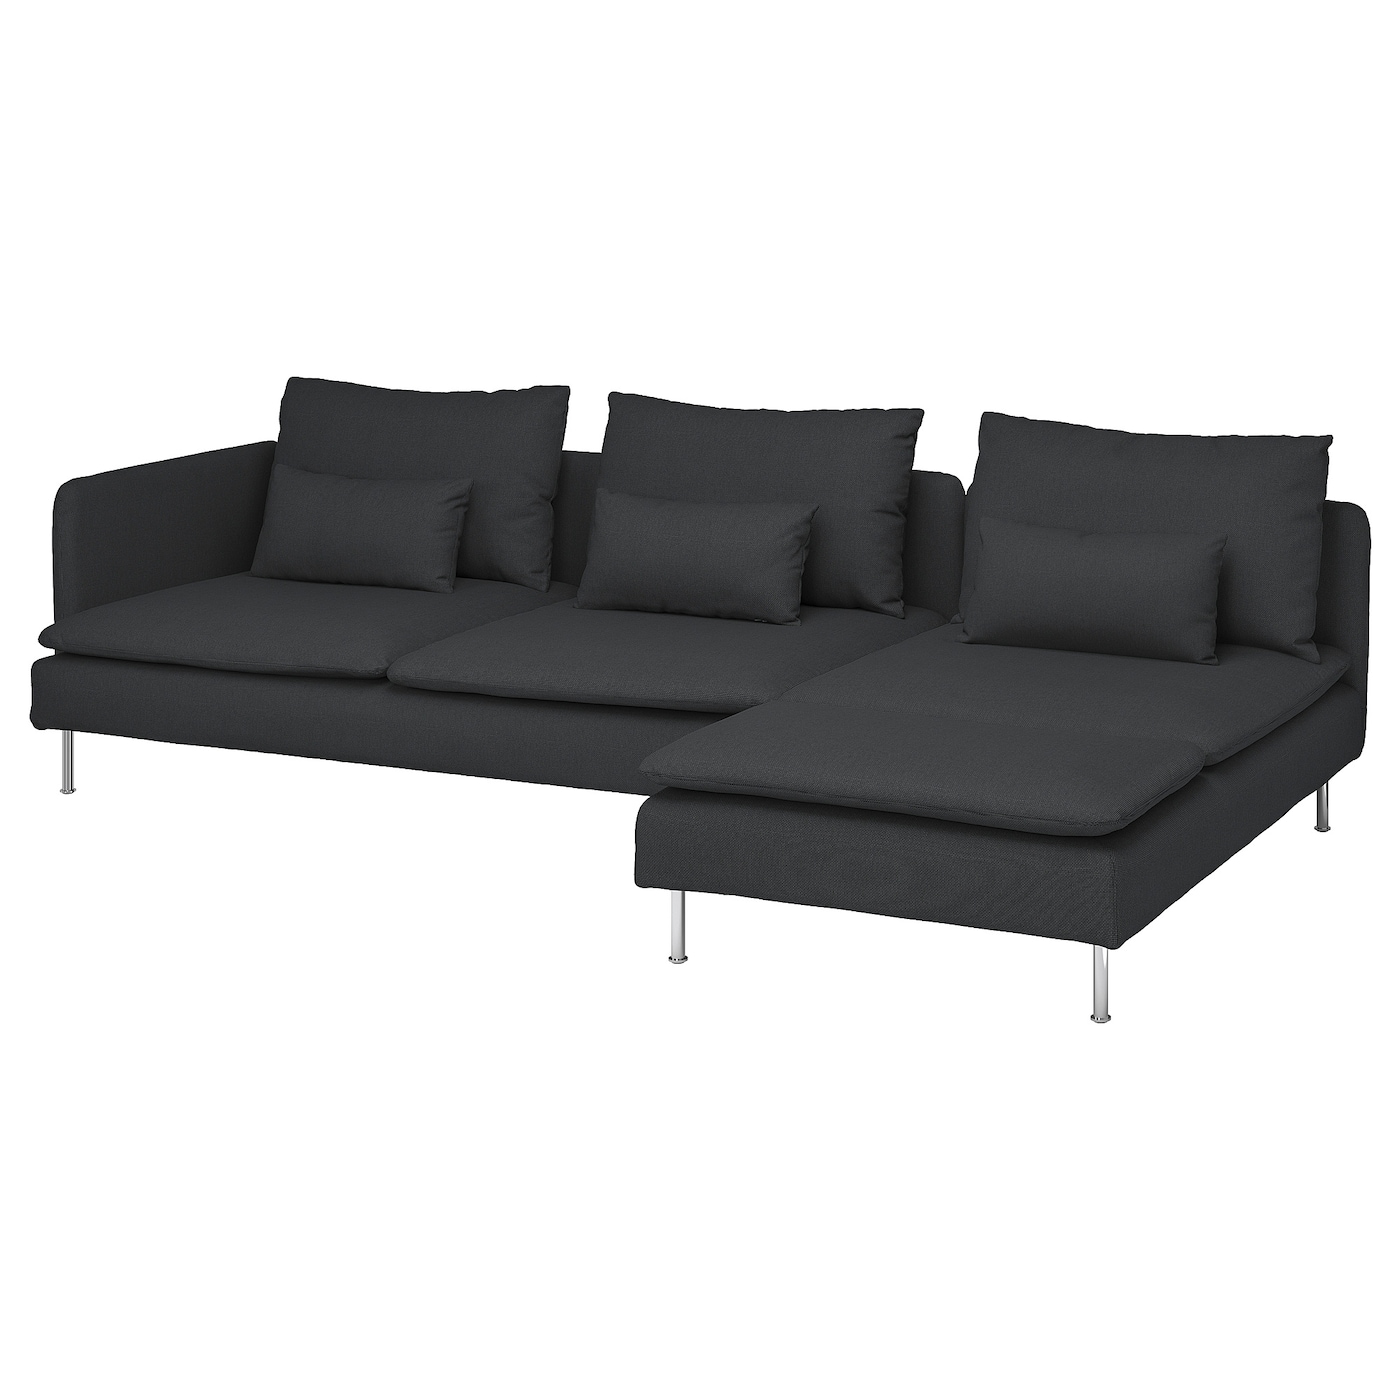 СЁДЕРХАМН 4-местный диван + диван, раскладной Фридтуна/темно-серый SODERHAMN IKEA мягкая игрушка диван город не раскладной